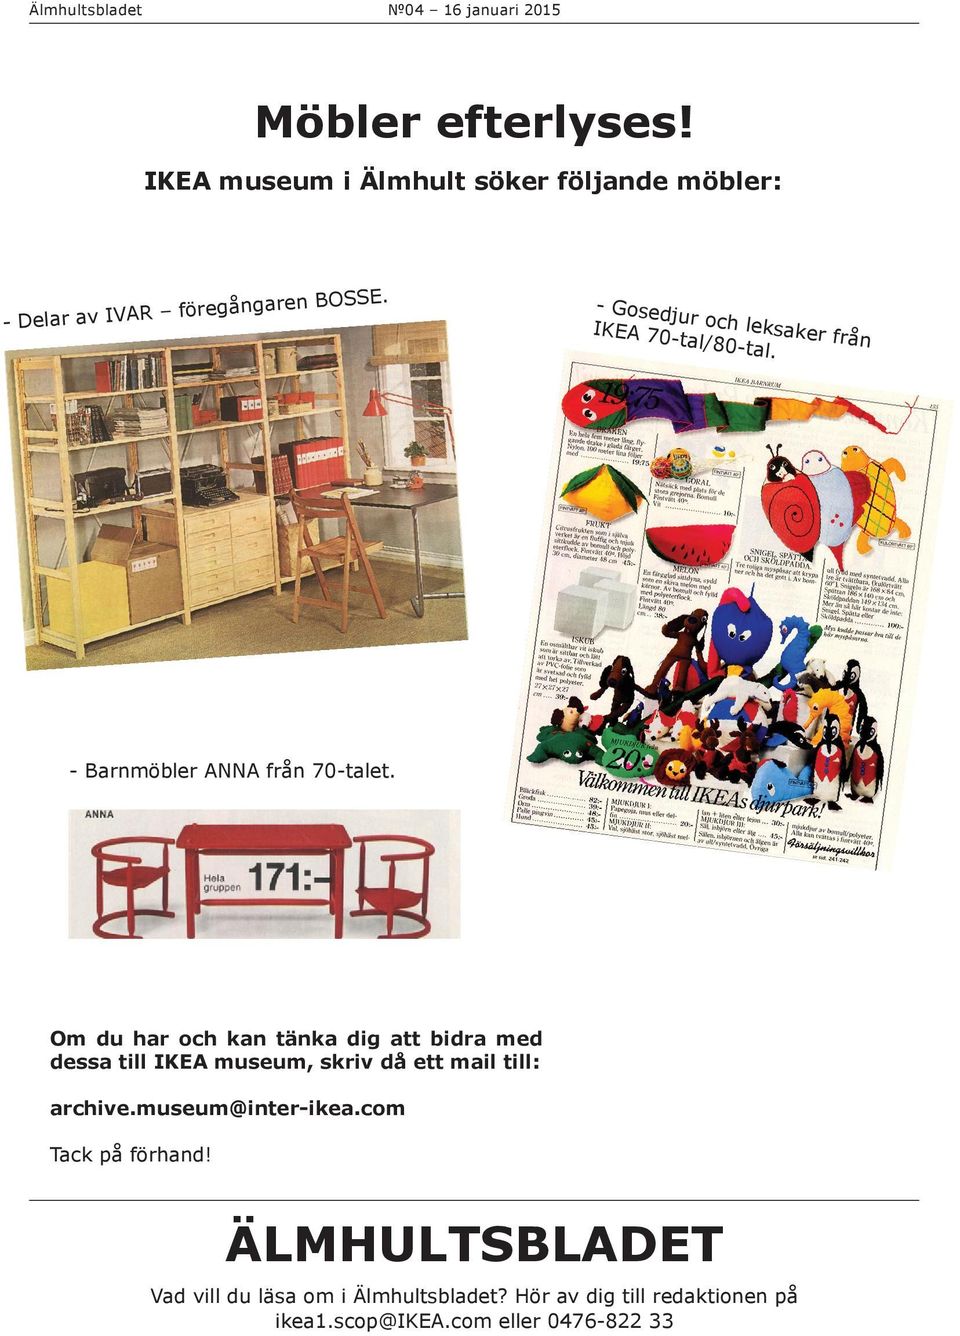 Om du har och kan tänka dig att bidra med dessa till IKEA museum, skriv då ett mail till: archive.museum@inter-ikea.